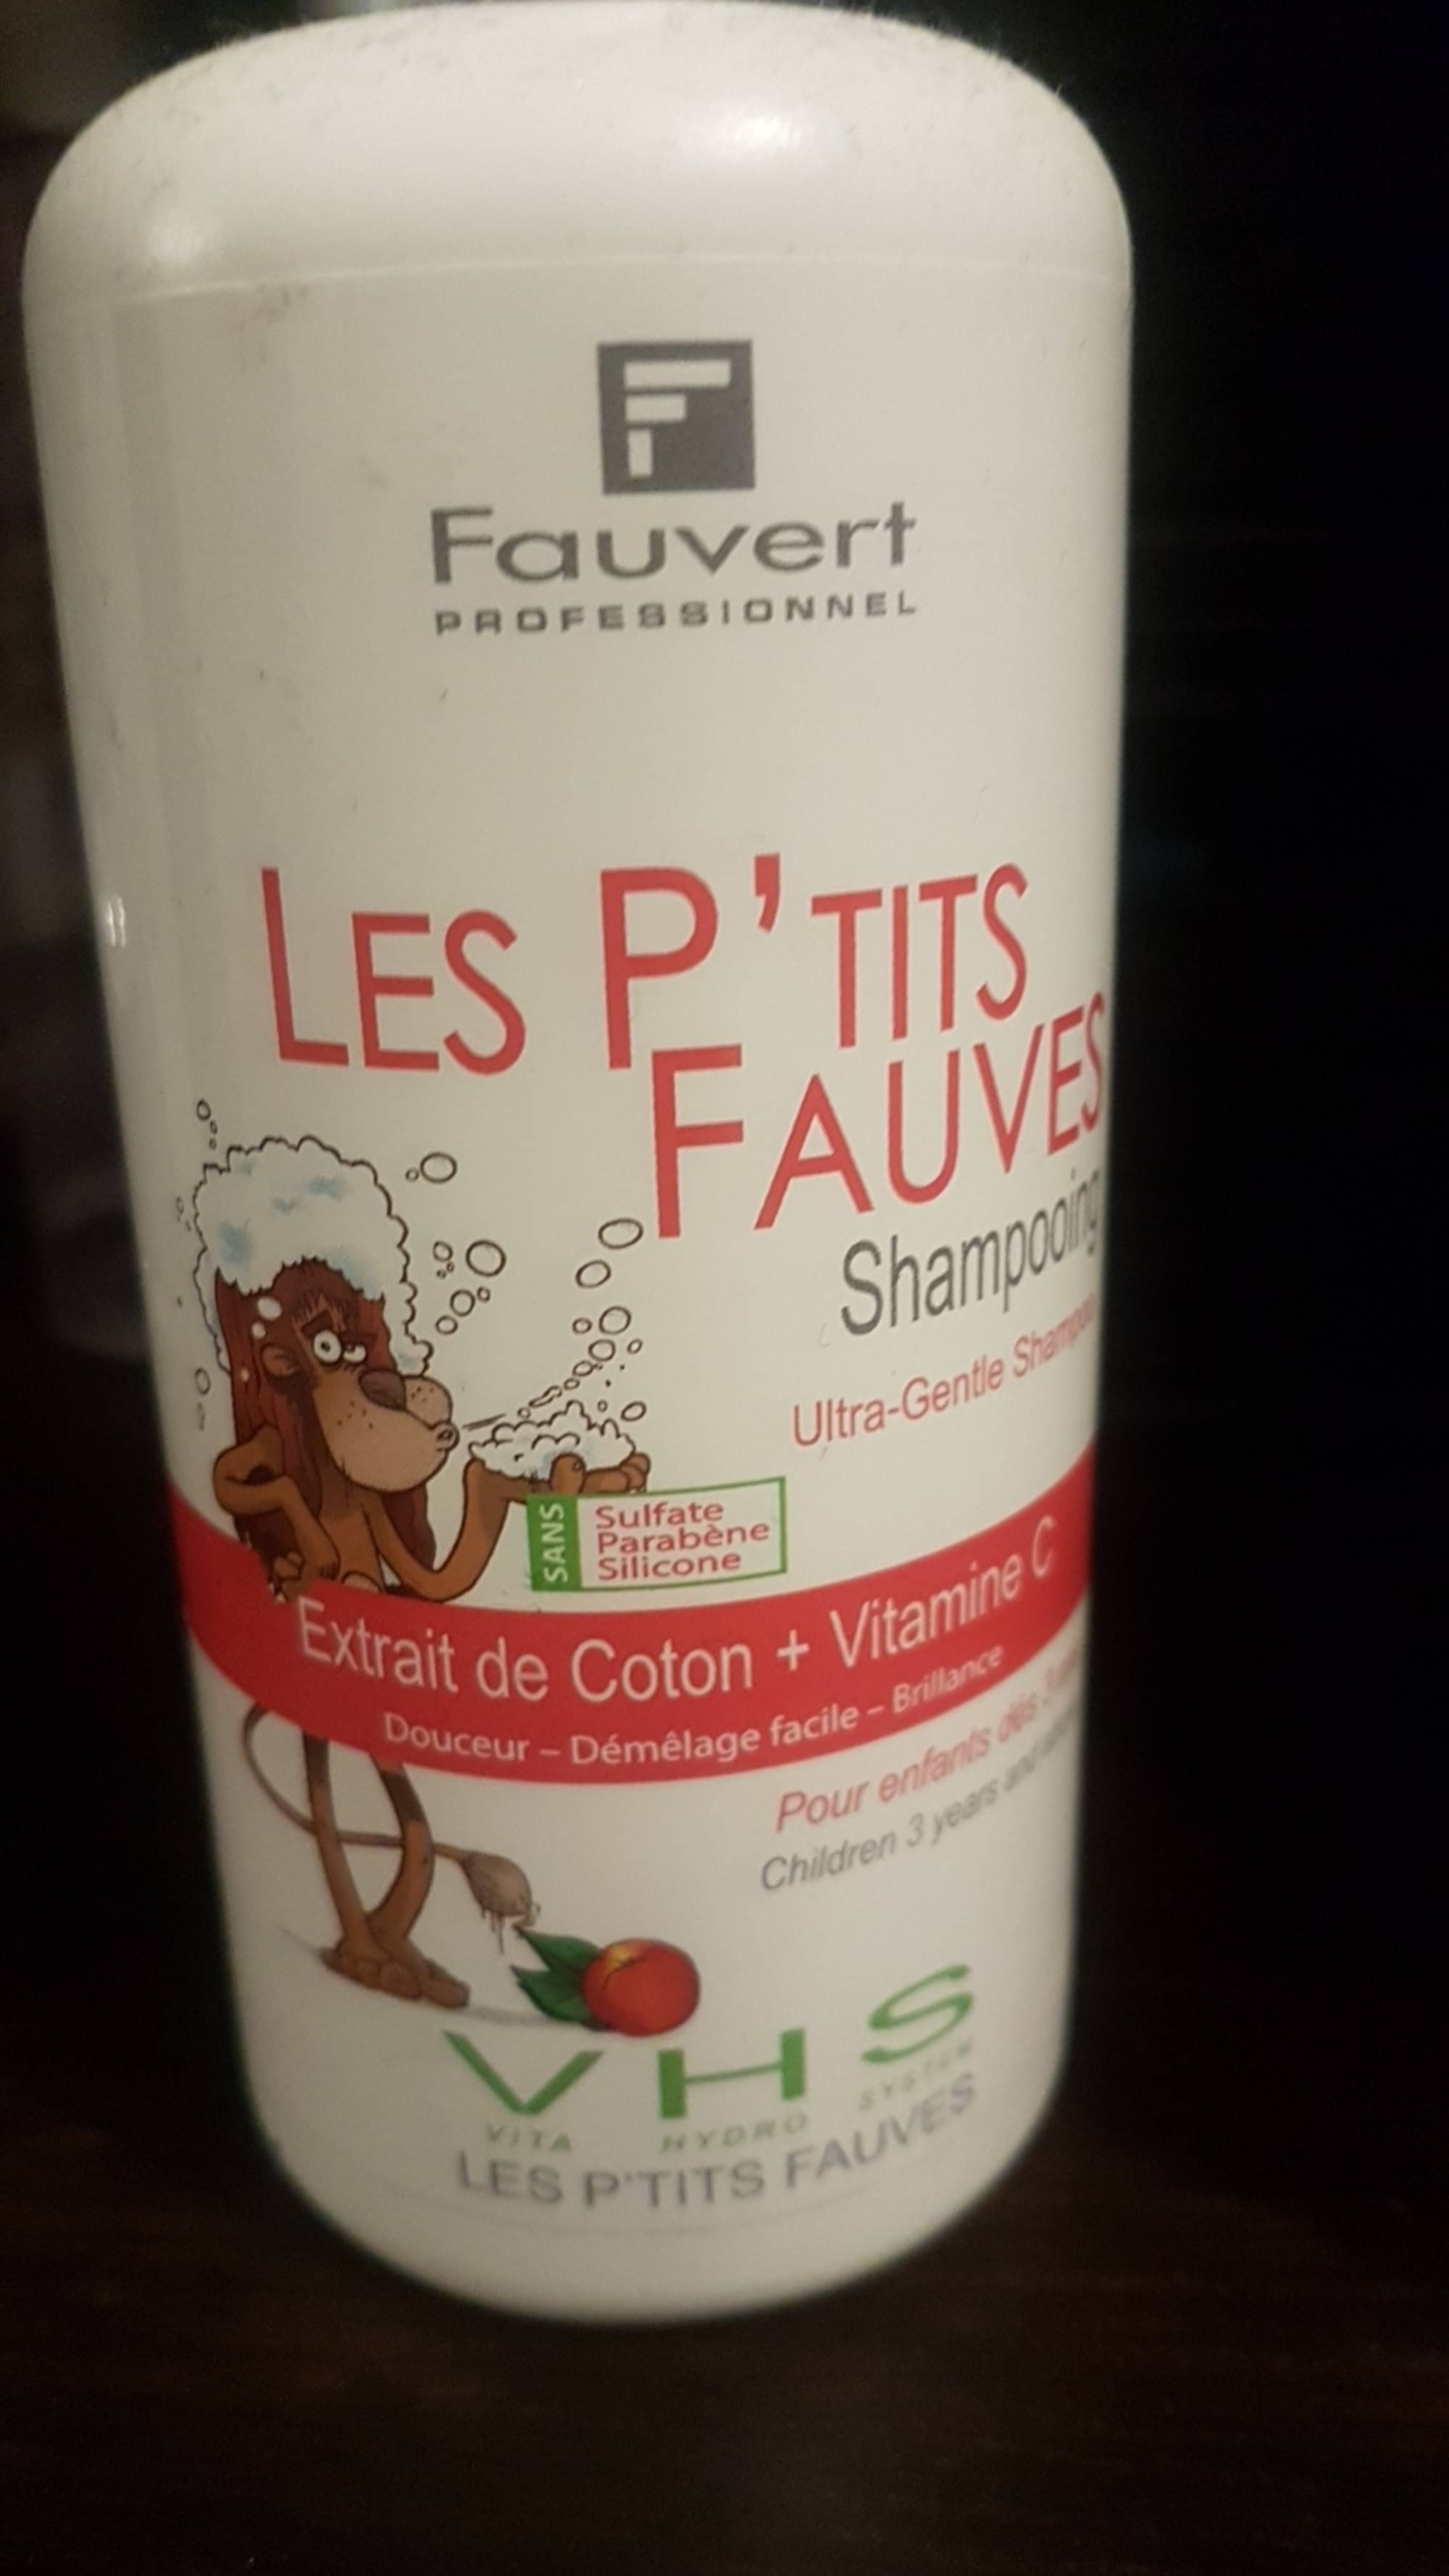 FAUVERT PROFESSIONNEL - Les P'tits fauves - Shampooing